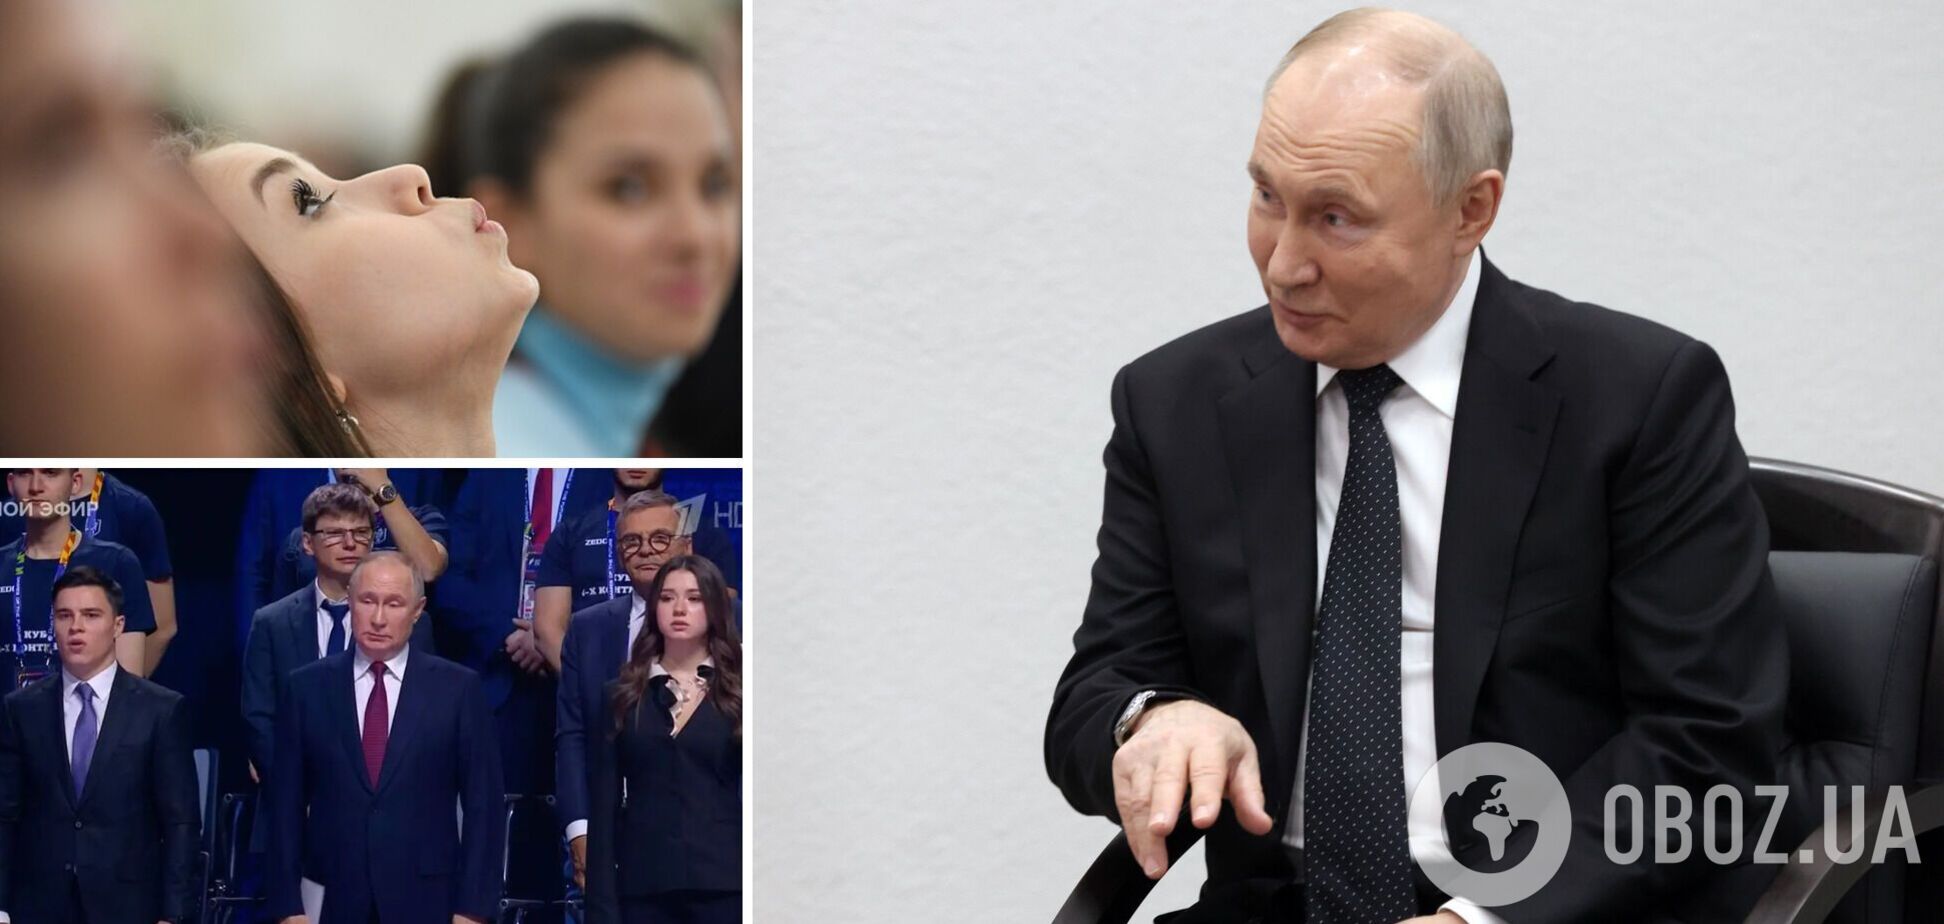 'Замена Кабаевой?' Путин появился на открытии турнира впервые со своей 'новой любовницей'. Фото